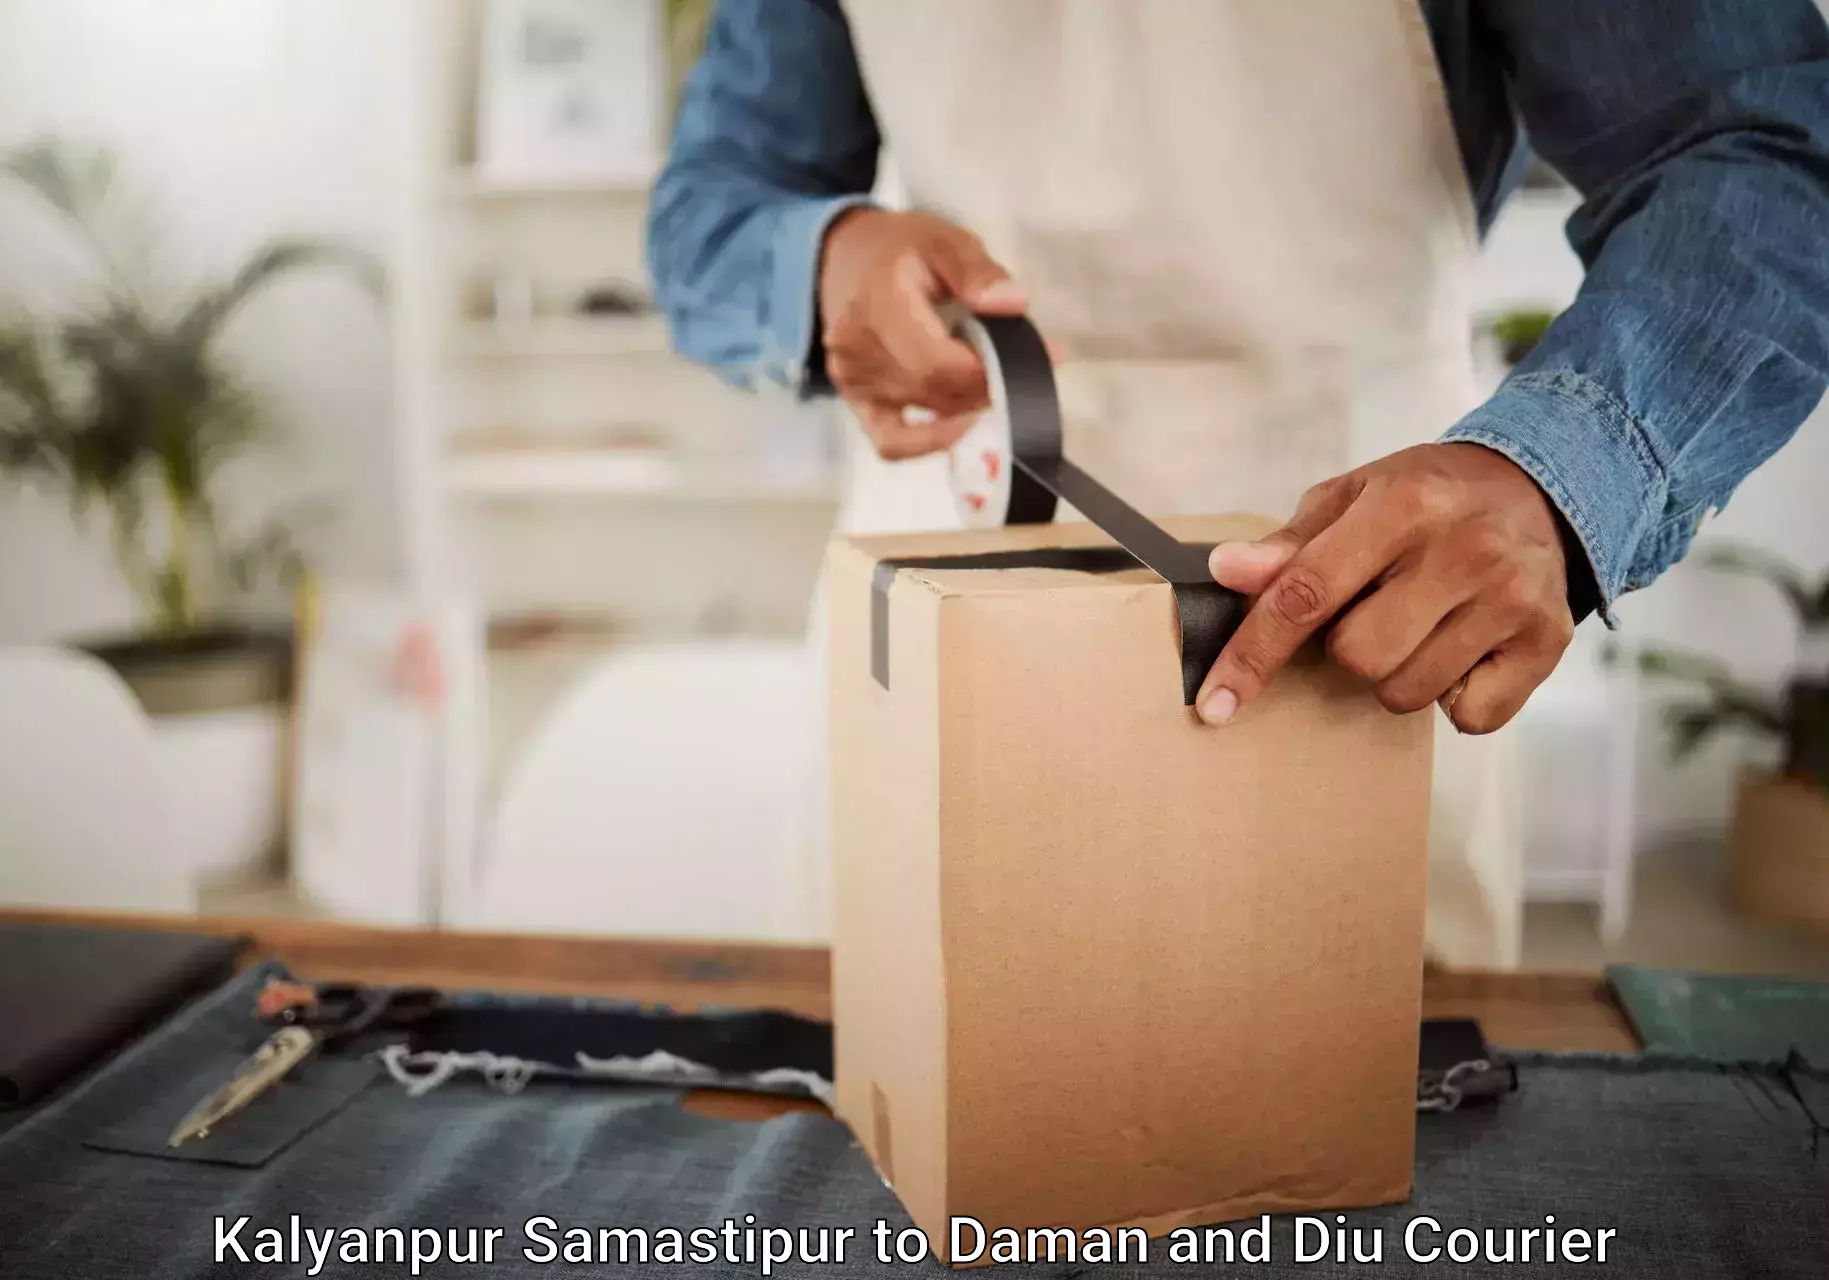 Luggage shipment tracking Kalyanpur Samastipur to Diu